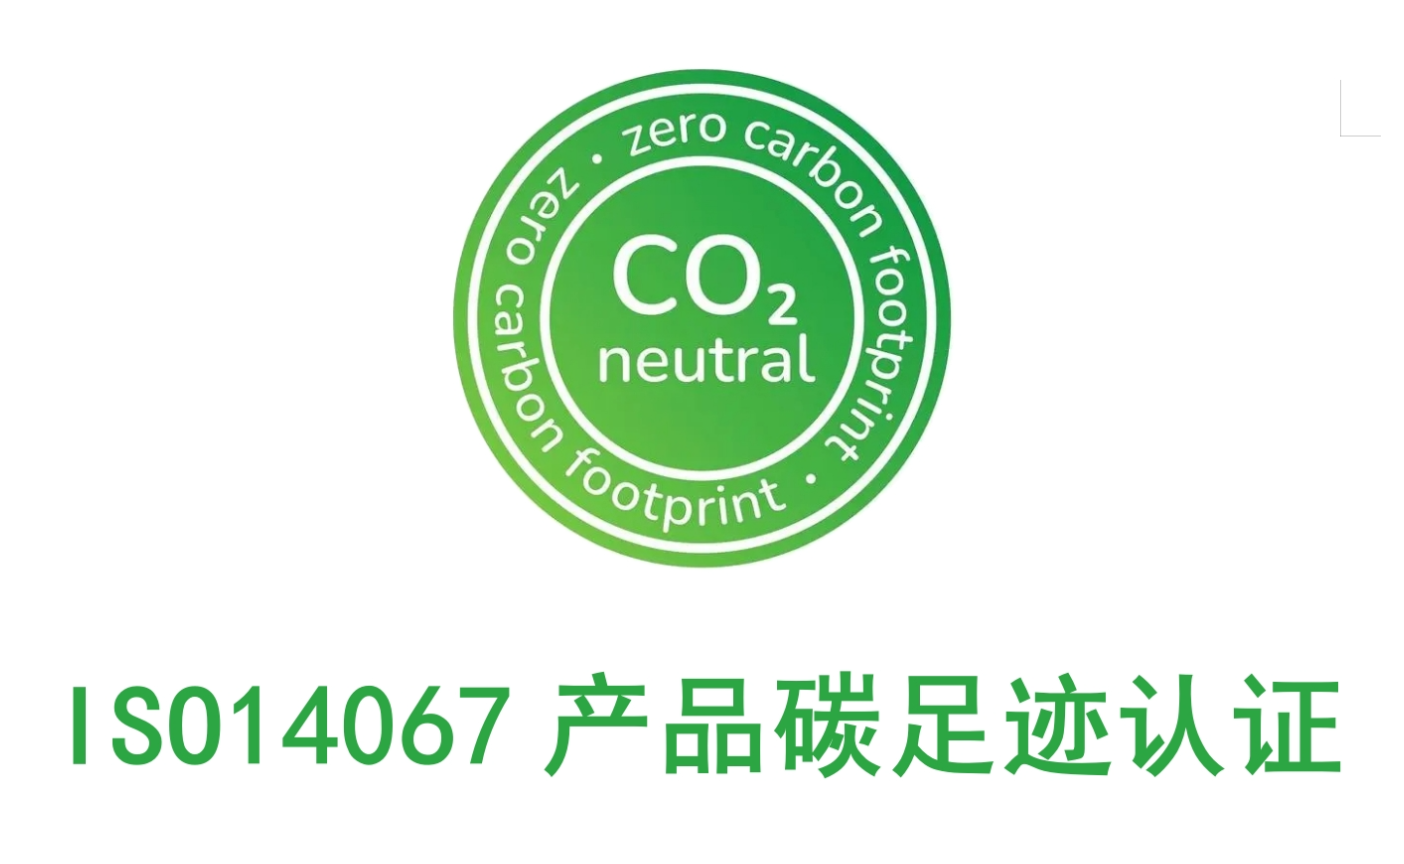 深圳代办碳足迹认证的服务机构